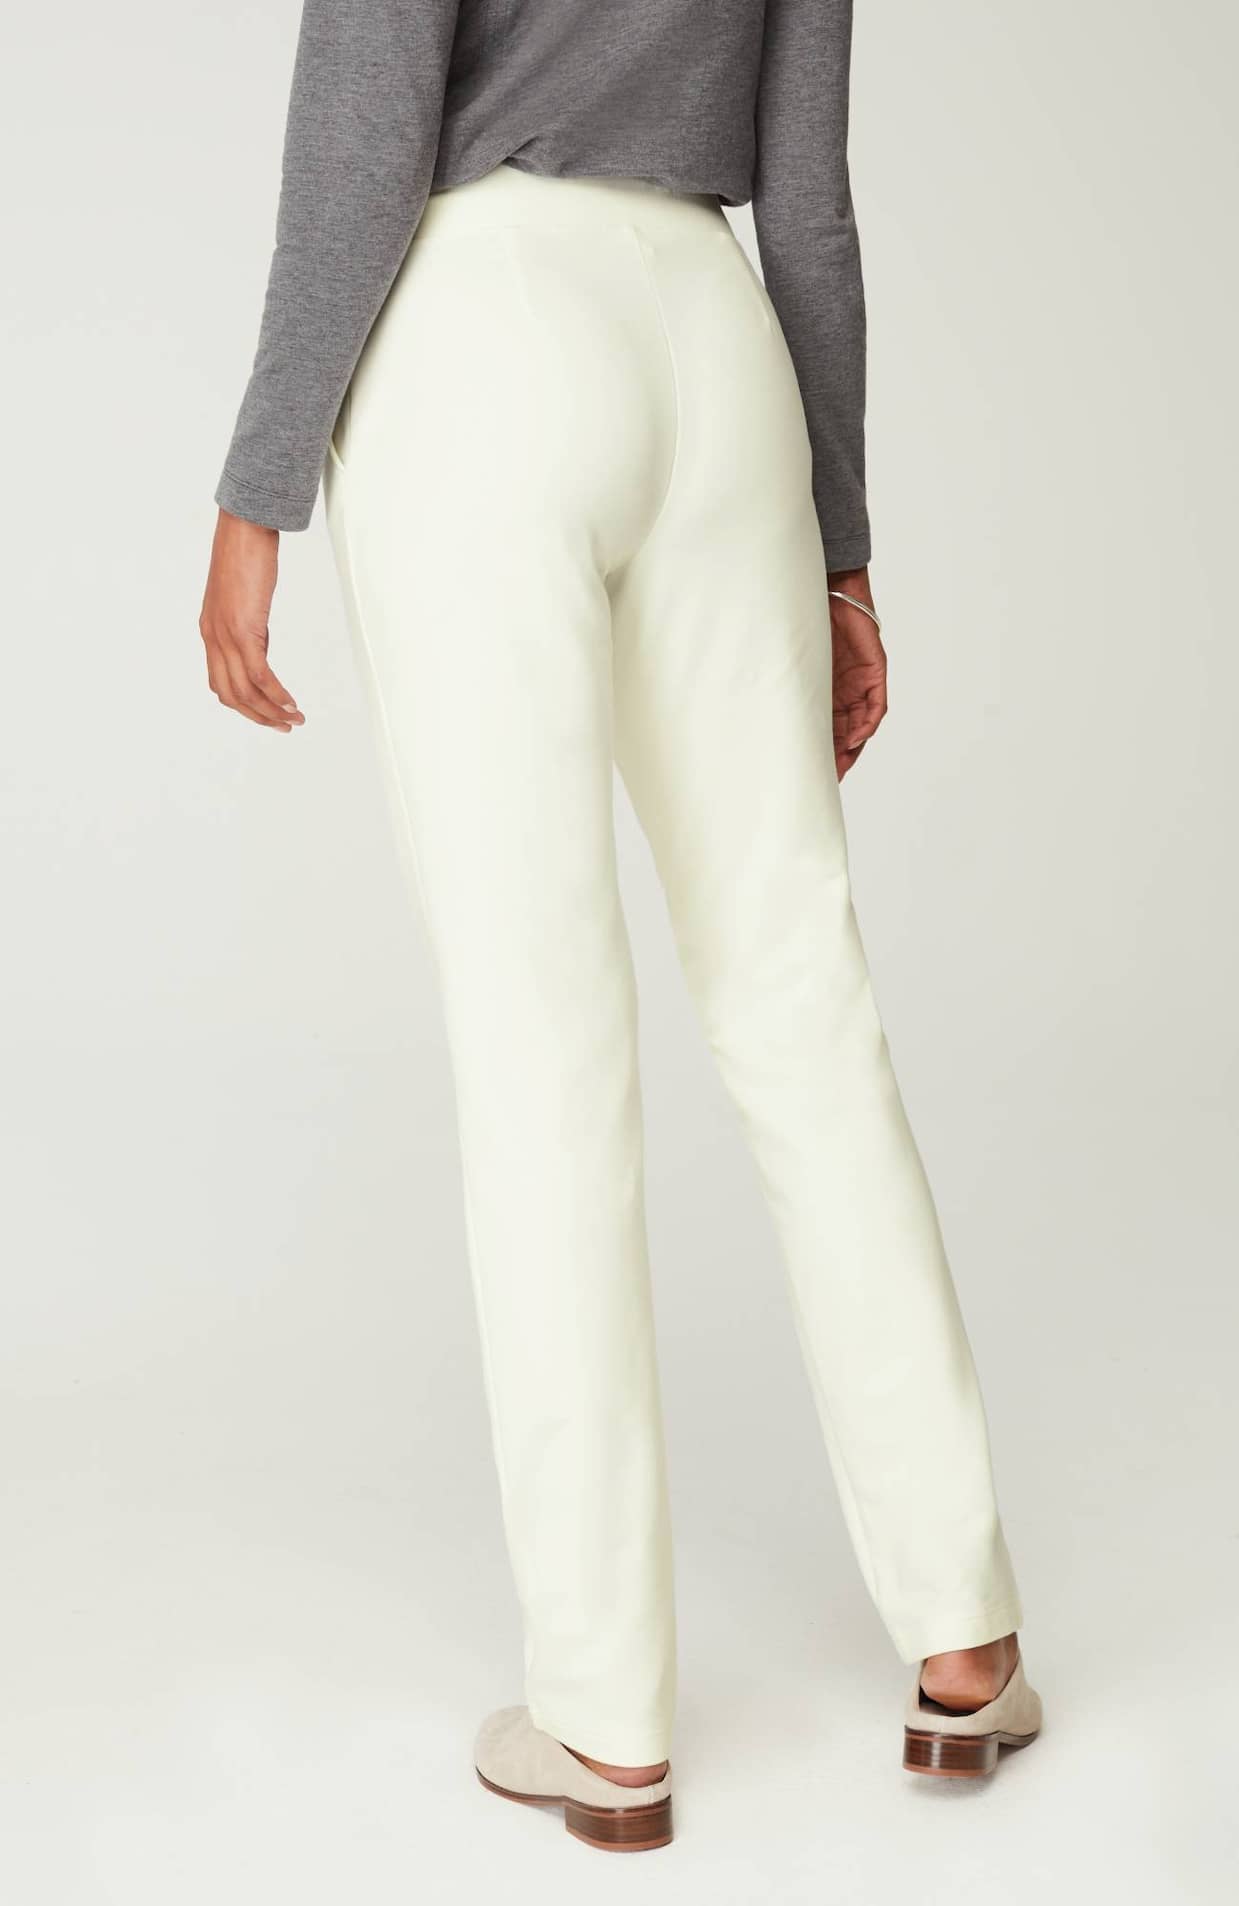 JWZUY Womens Slim Fit Pant Elastic Waist Ankle Pants Design Pants Pencil  Trouser Plus Size Ruched One Leg Size Zipper Pant Gray XXL 